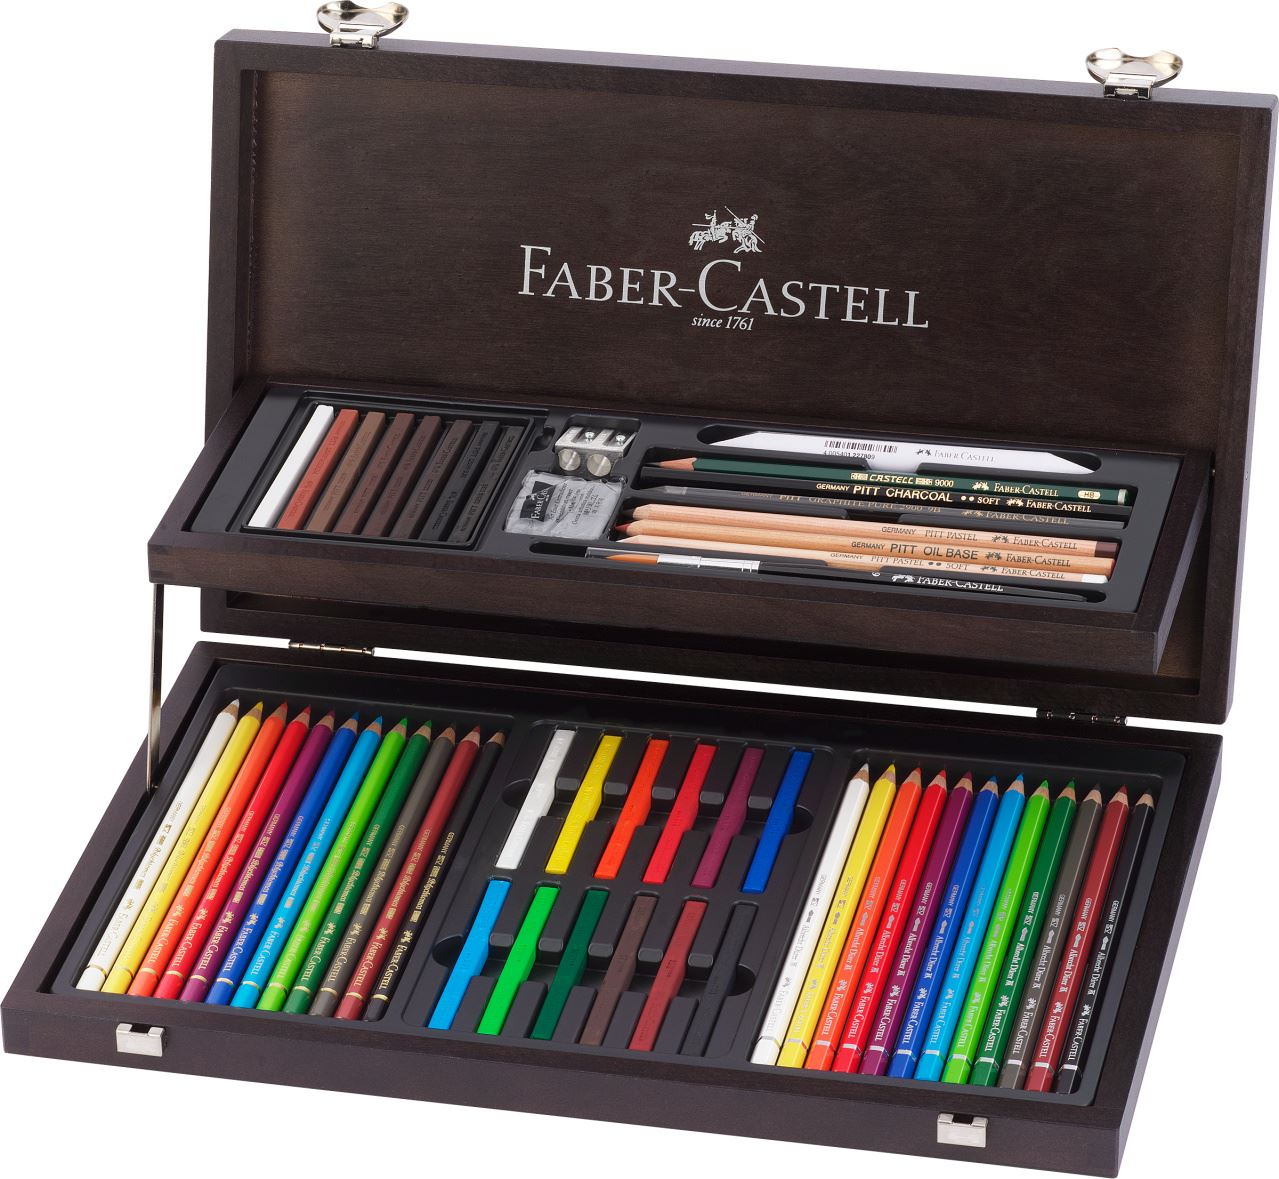 Faber-Castell - Kolekce ART dřevěná kazeta 54ks a doplňky